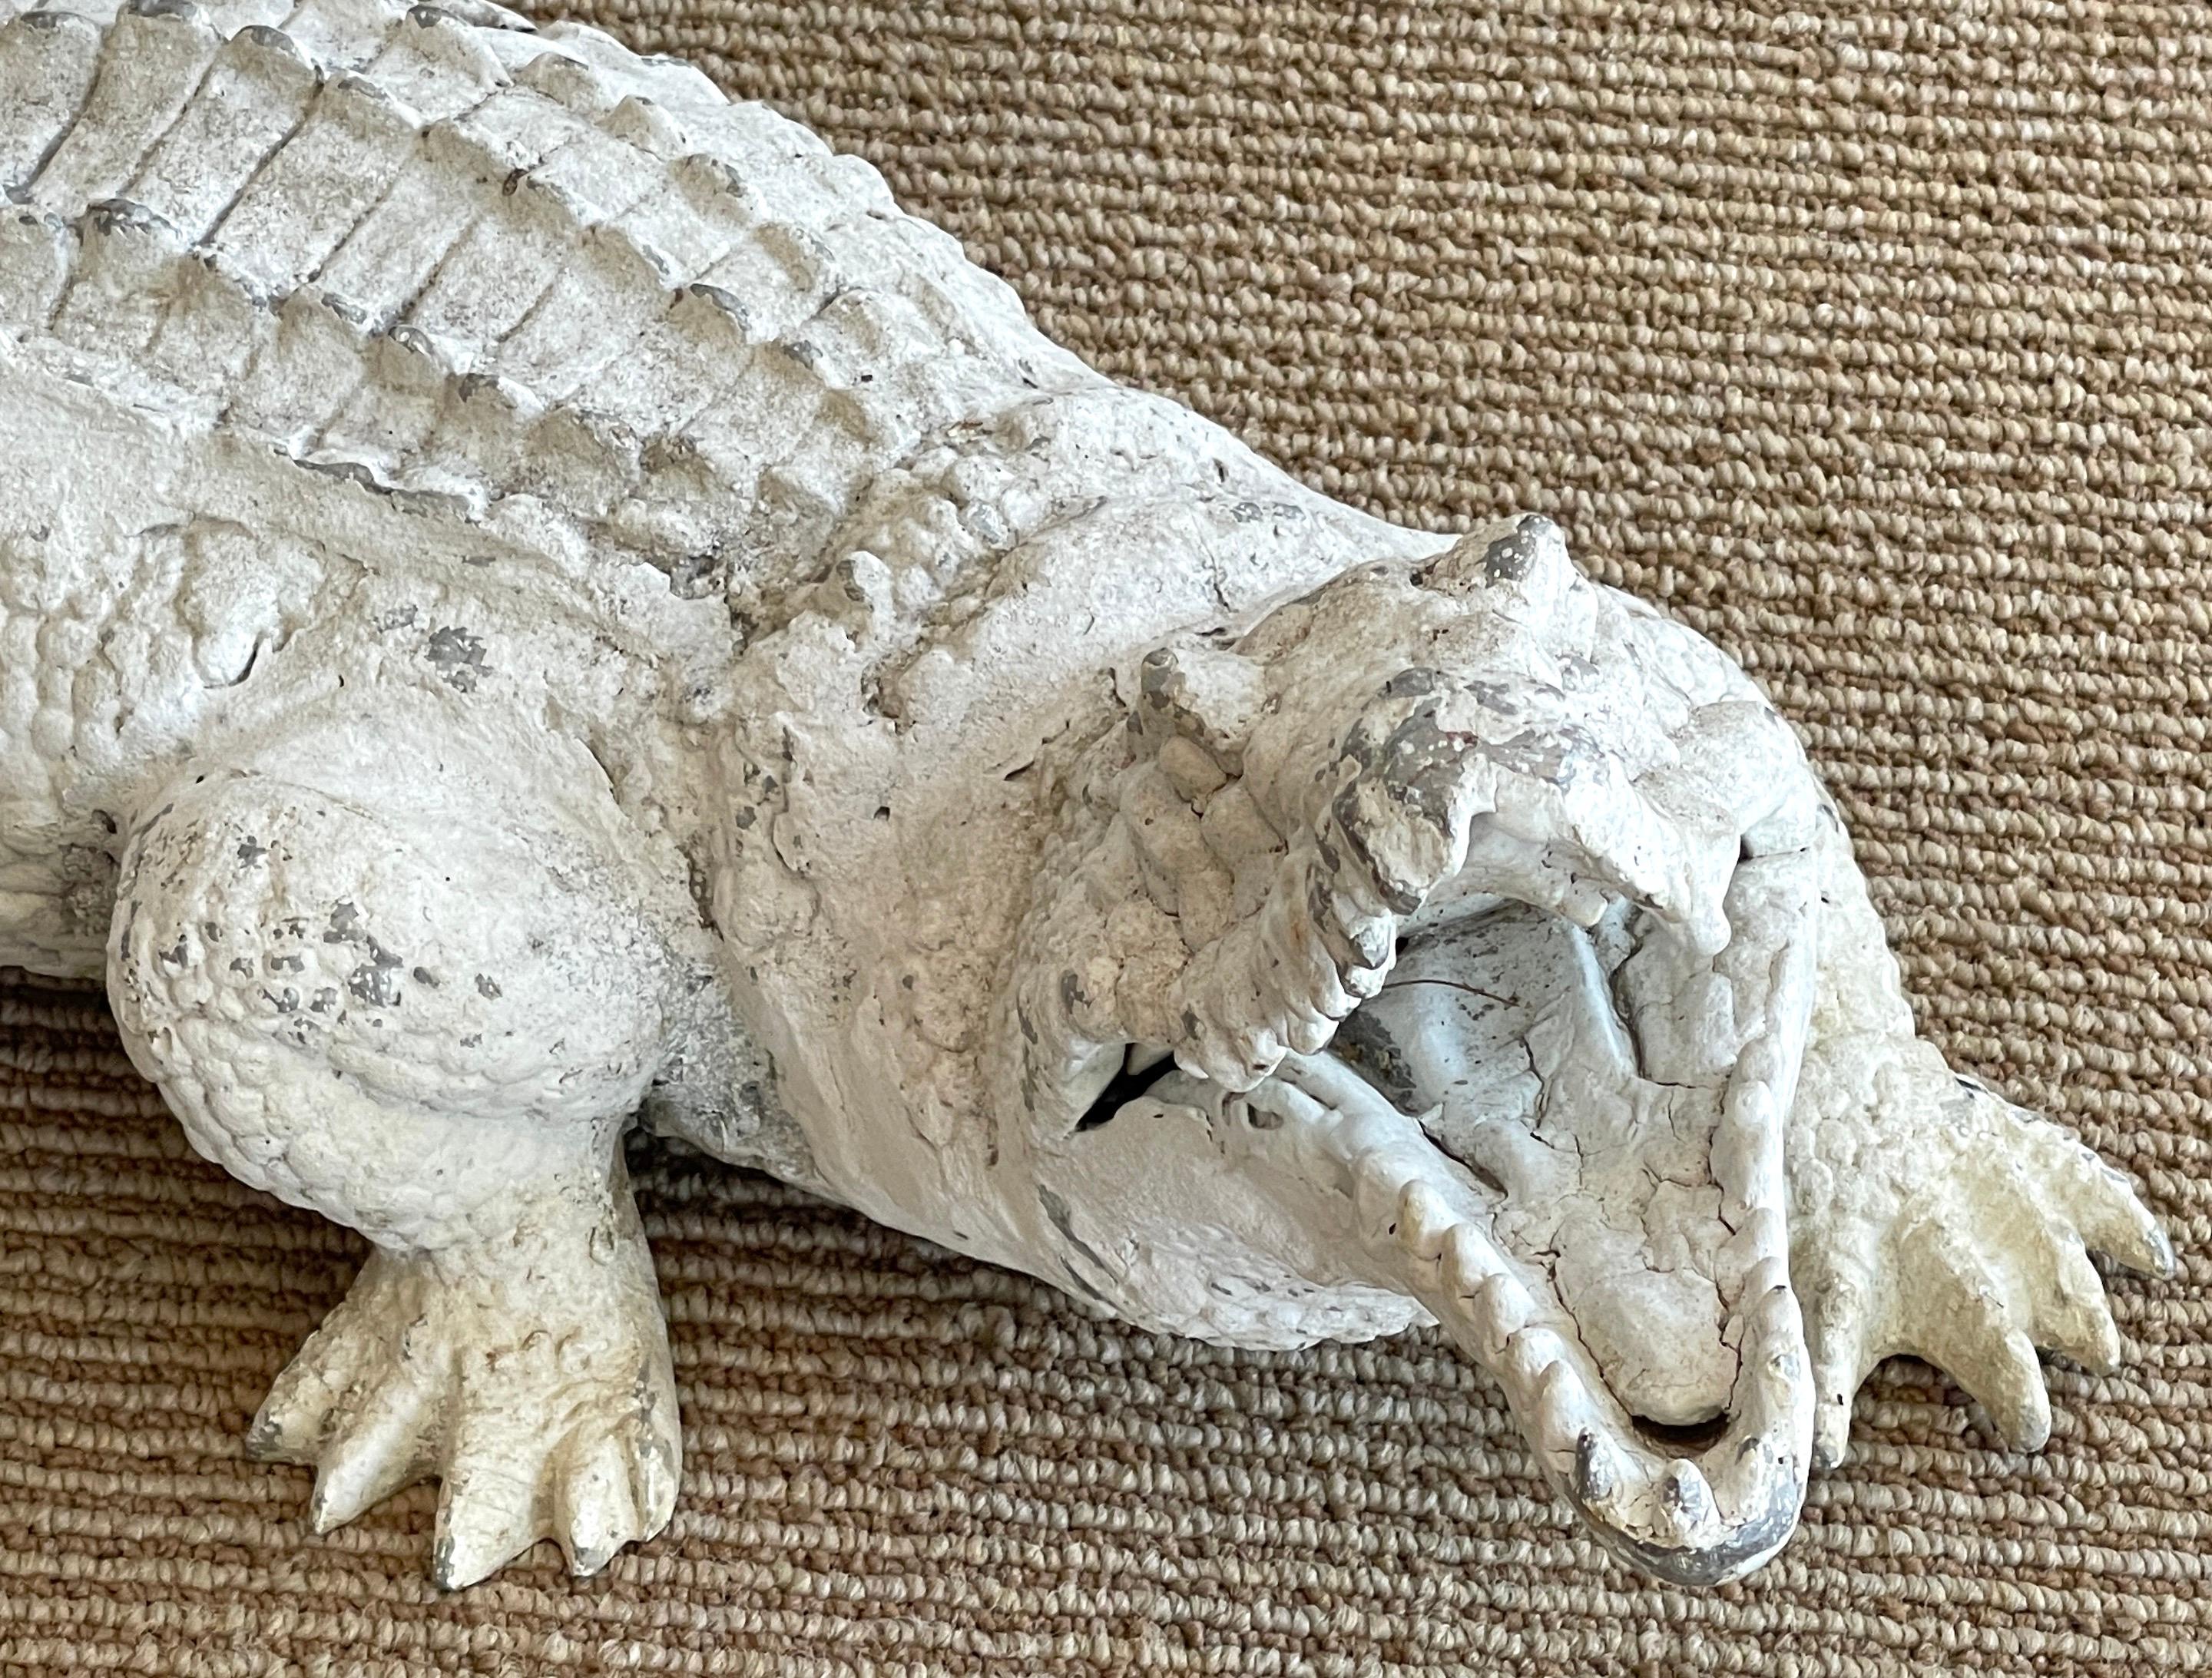 albino alligator for sale